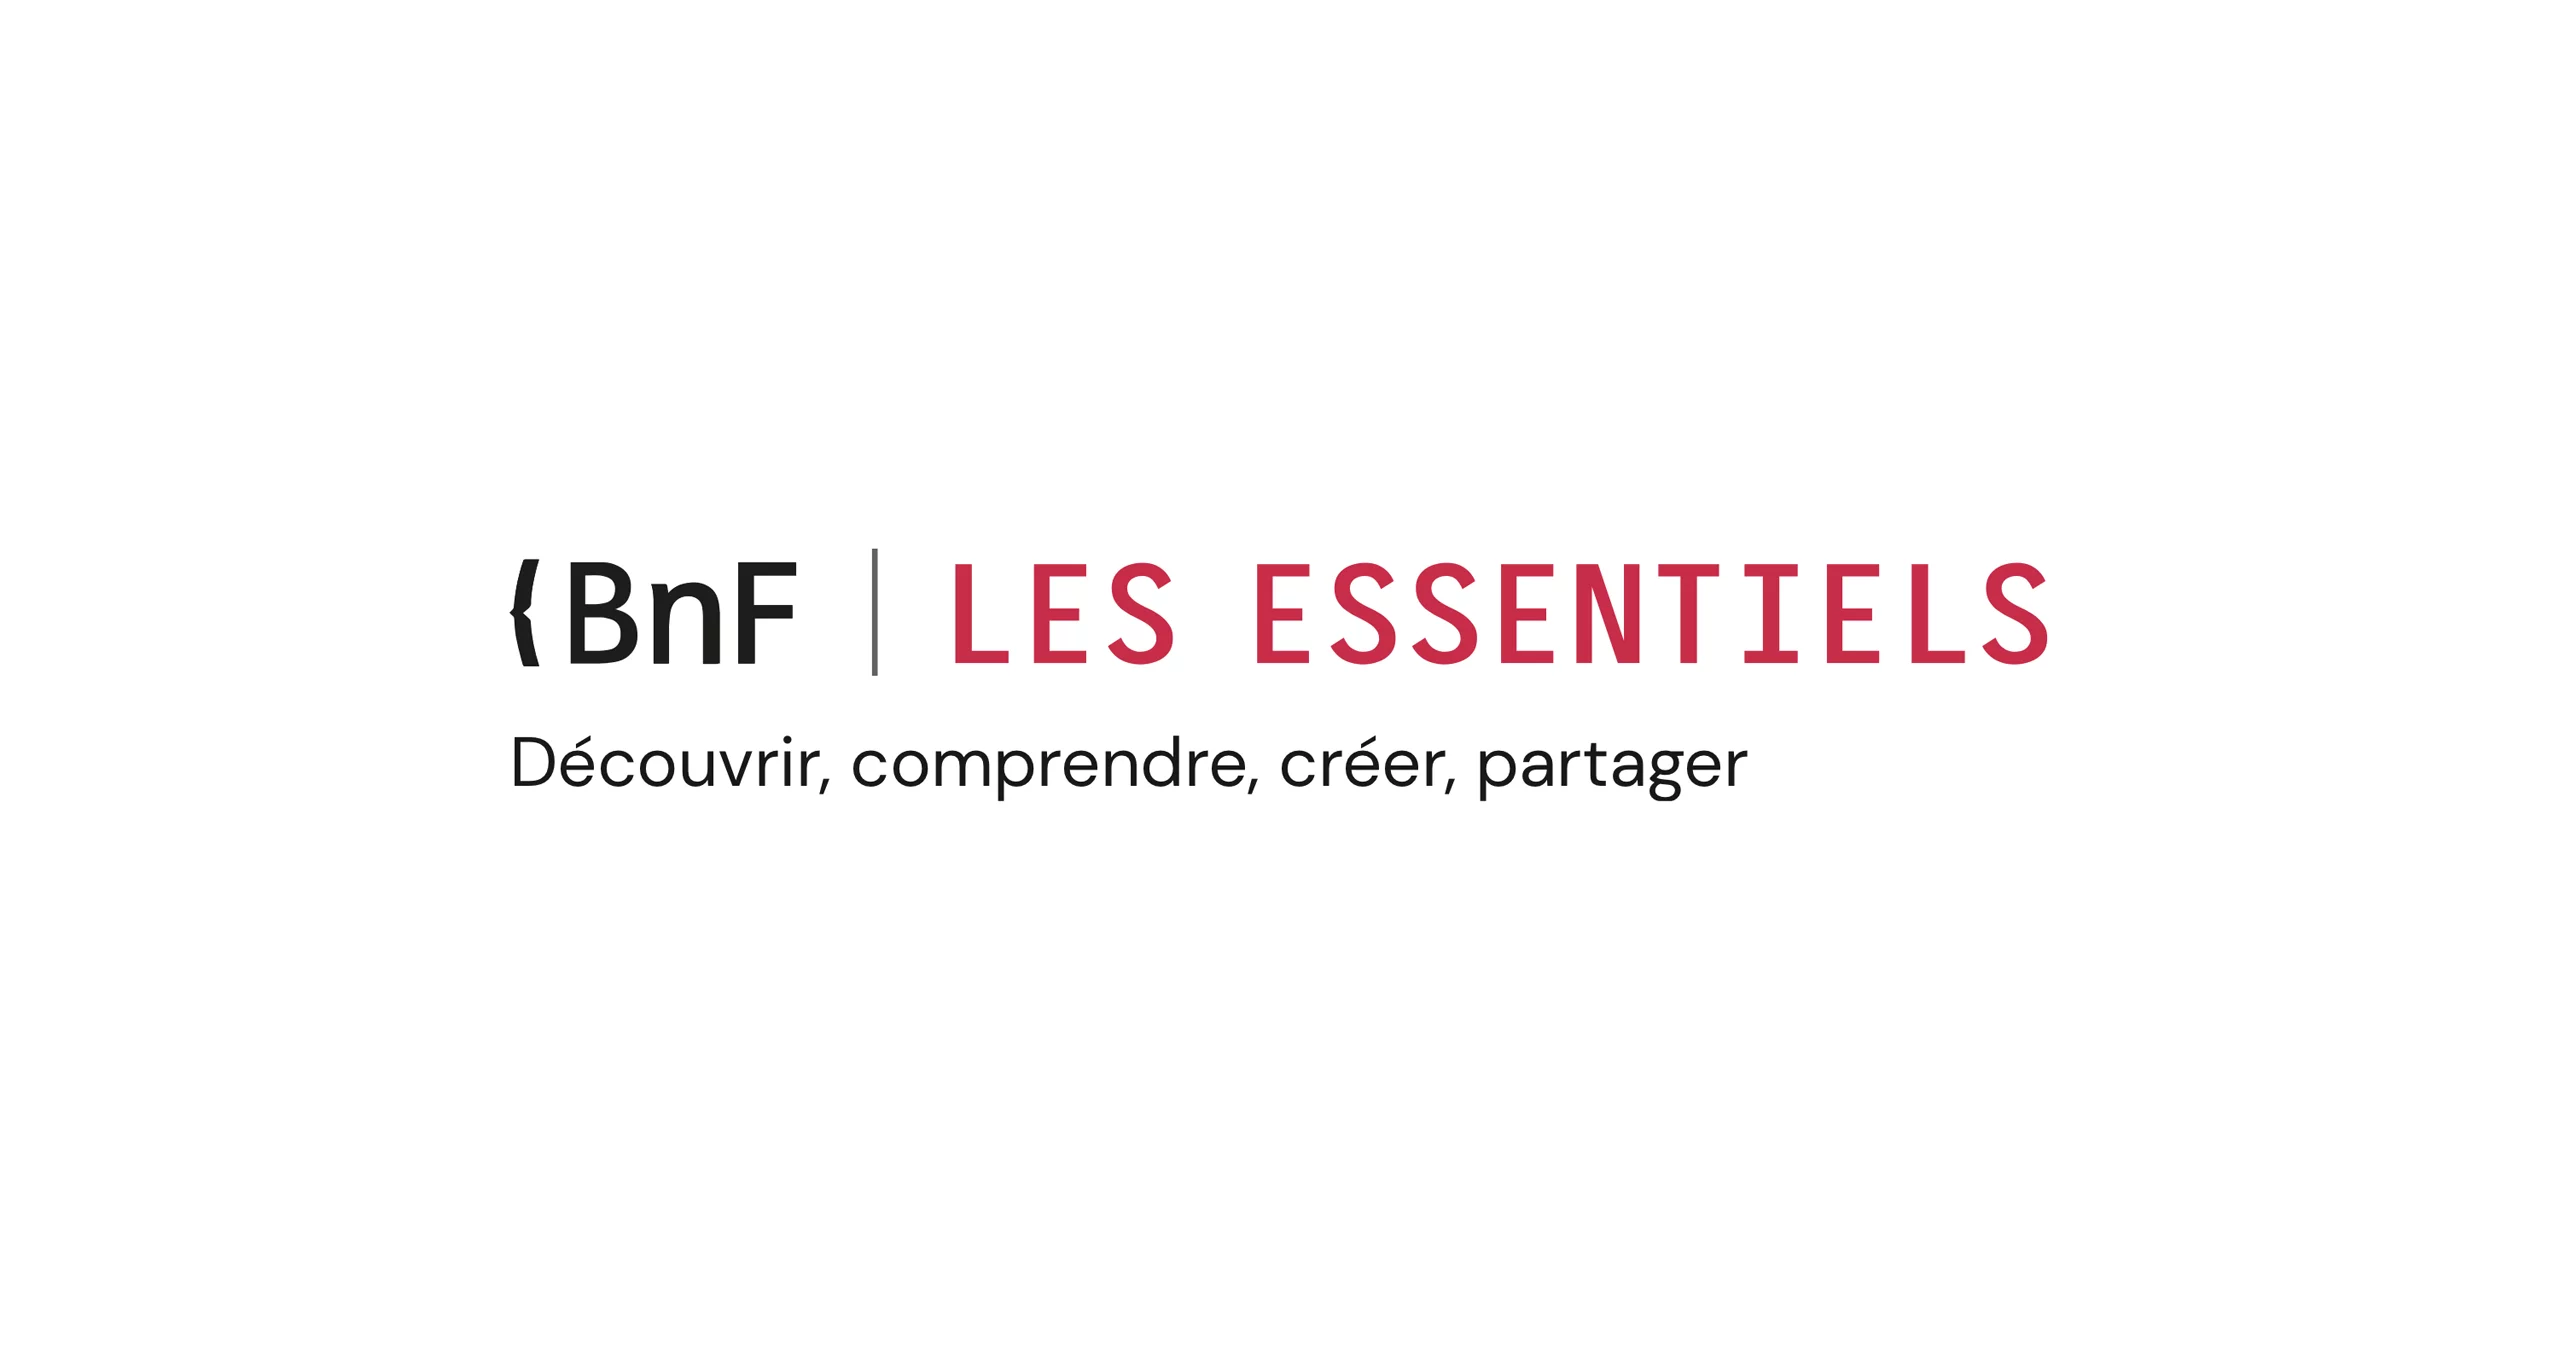 Logo BNF Les essentiels avec BNF en noir et les essentiels en rouge. En dessous aligné à gauche la phrase "Découvrir, comprendre, créer, partager"